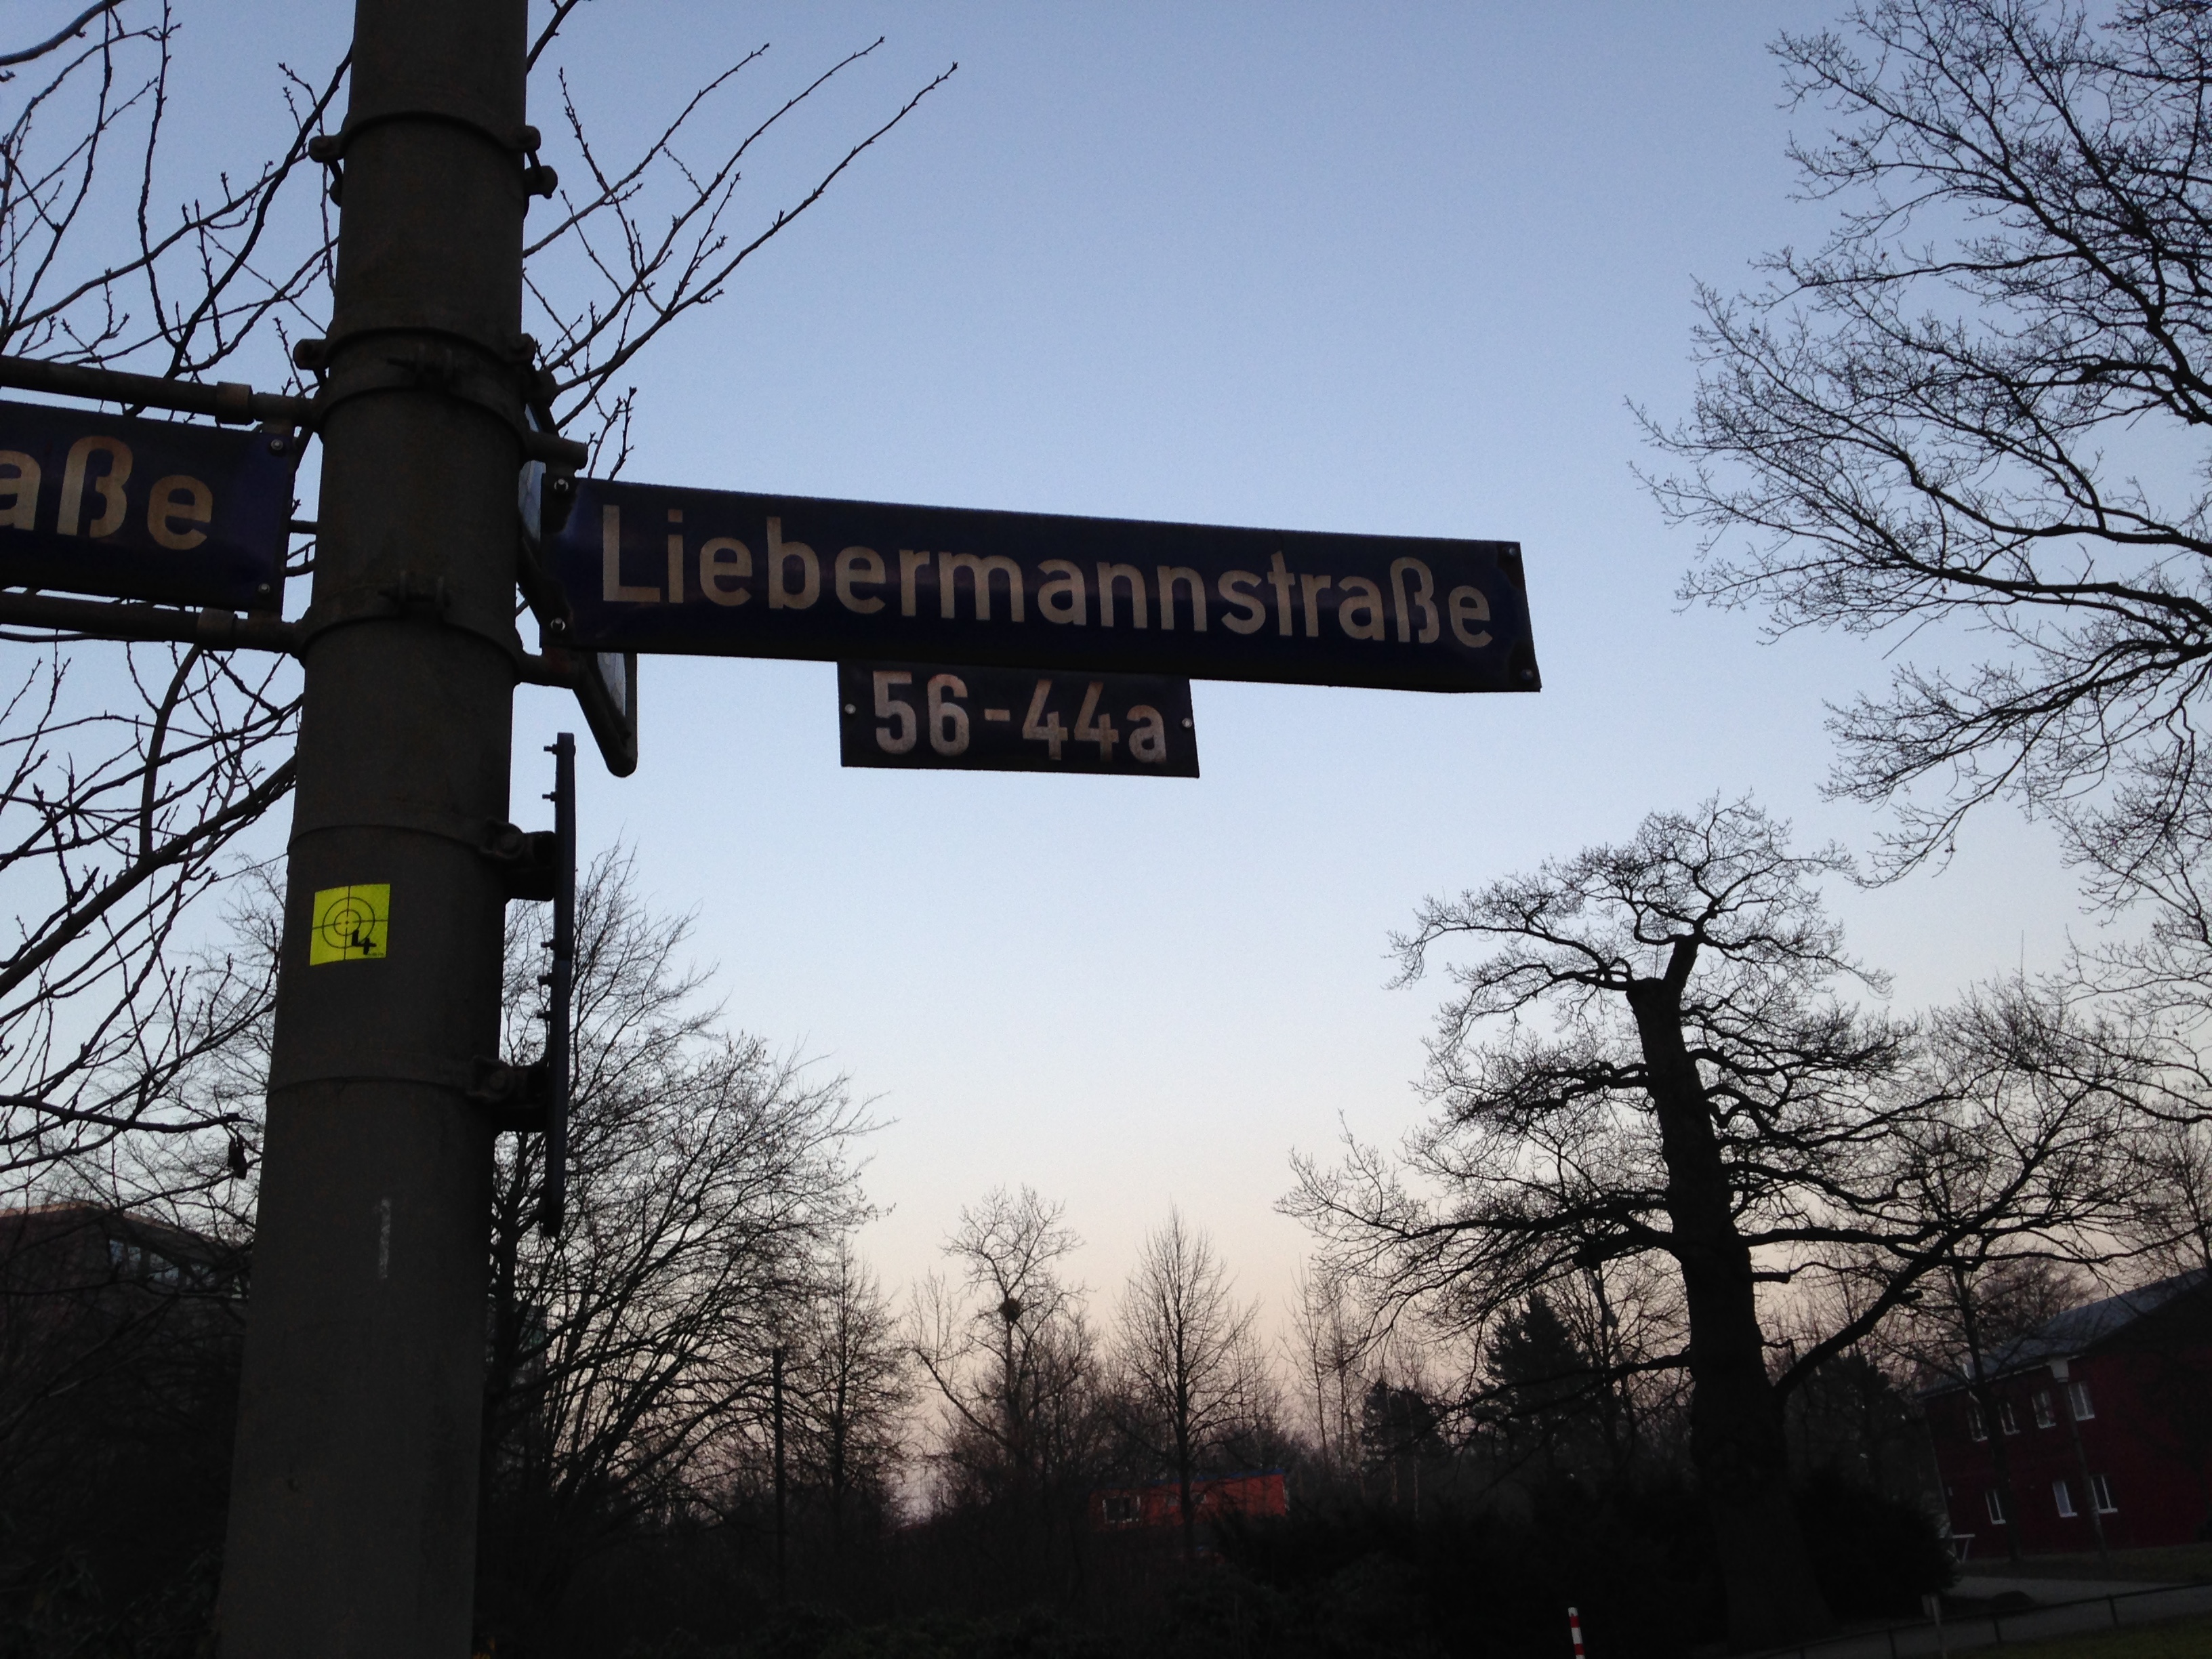 Liebermannstrasse feiert mit!